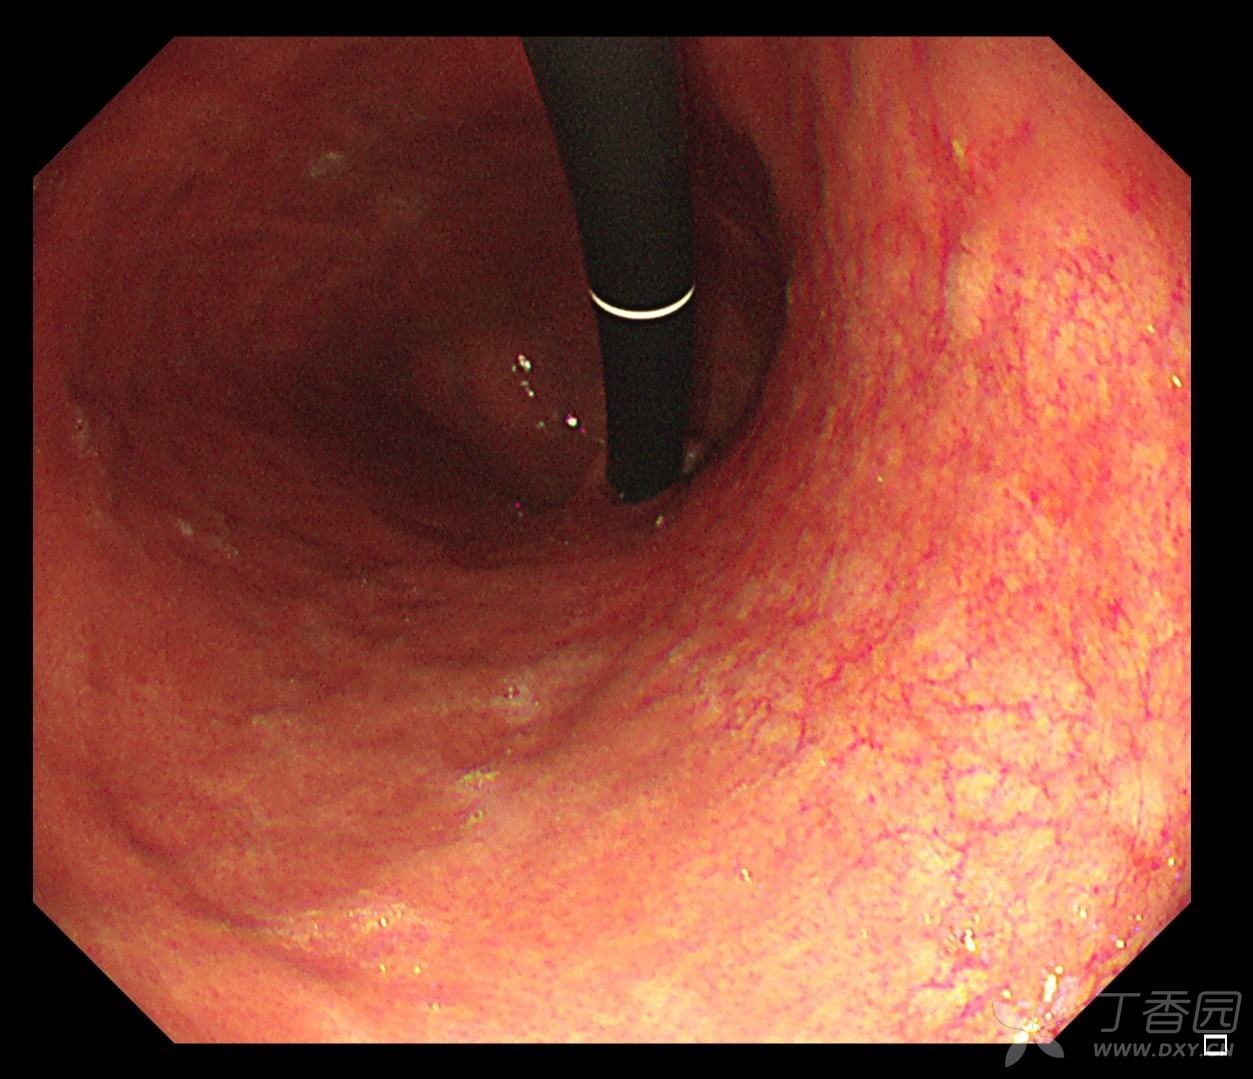 萎缩性胃炎胃镜图片图片